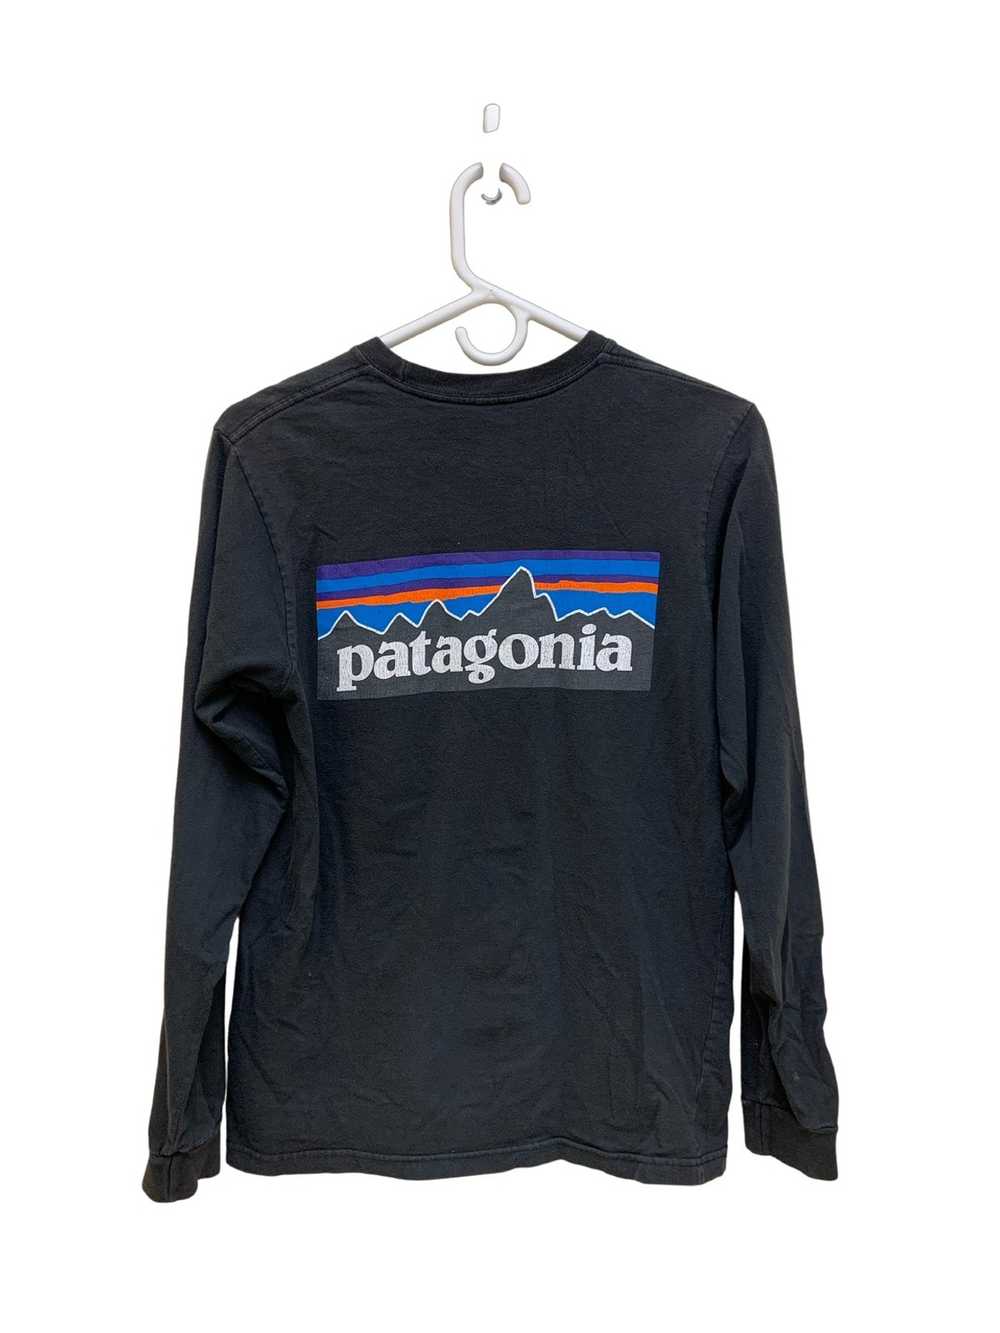 Patagonia Black Patagonia Long Sleeve T-shirt - image 2